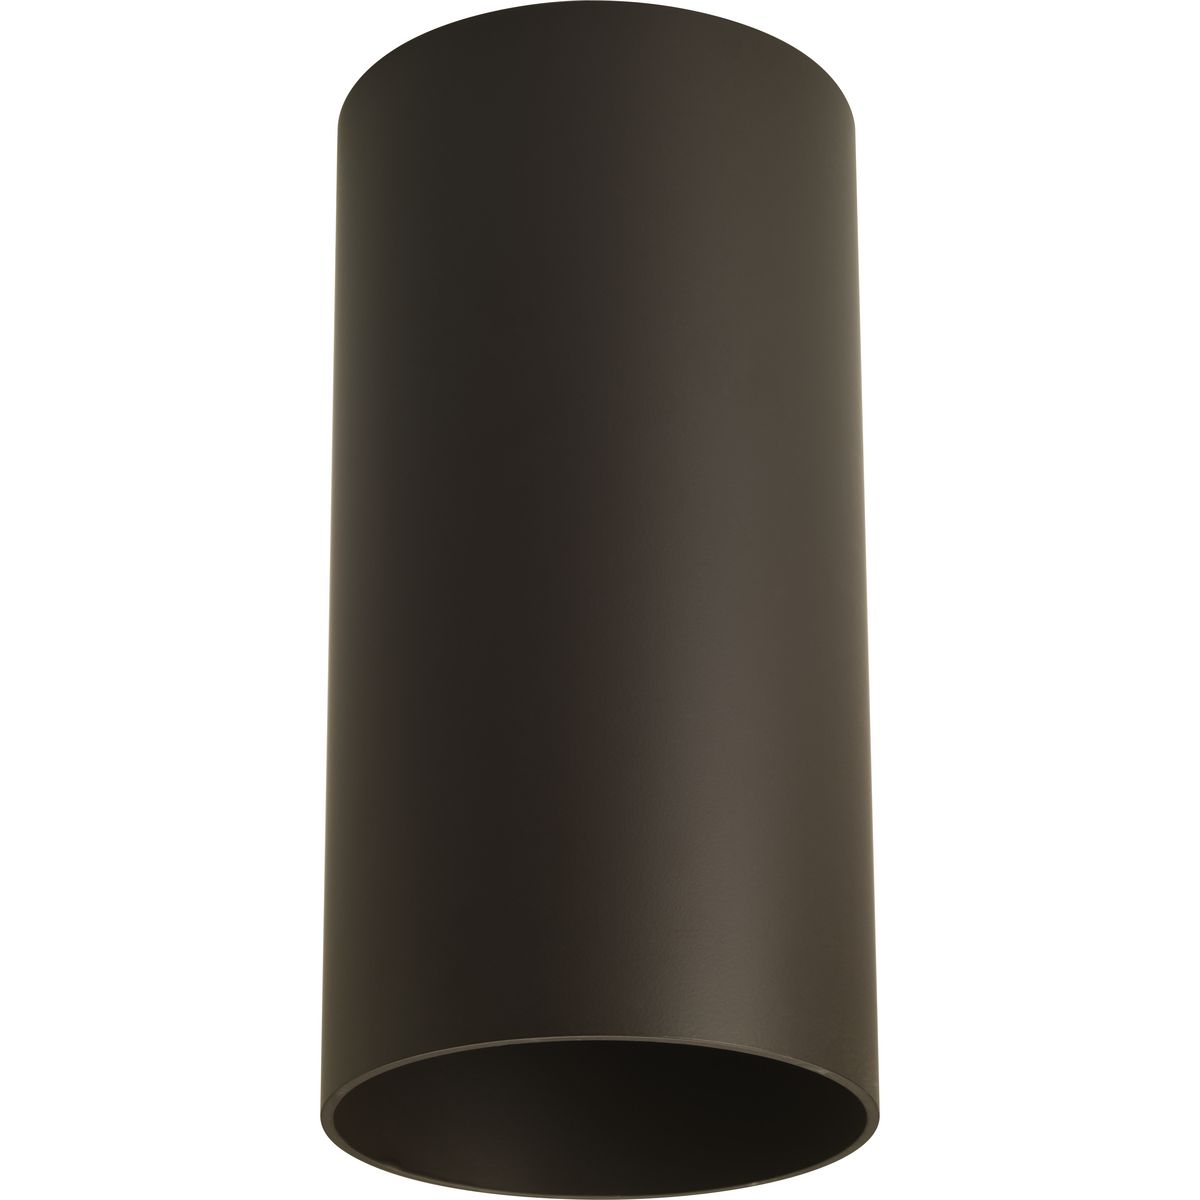 6" LED Outdoor Flush Mount Cylinder - Damp Location Listed - Model P5741-20/30K